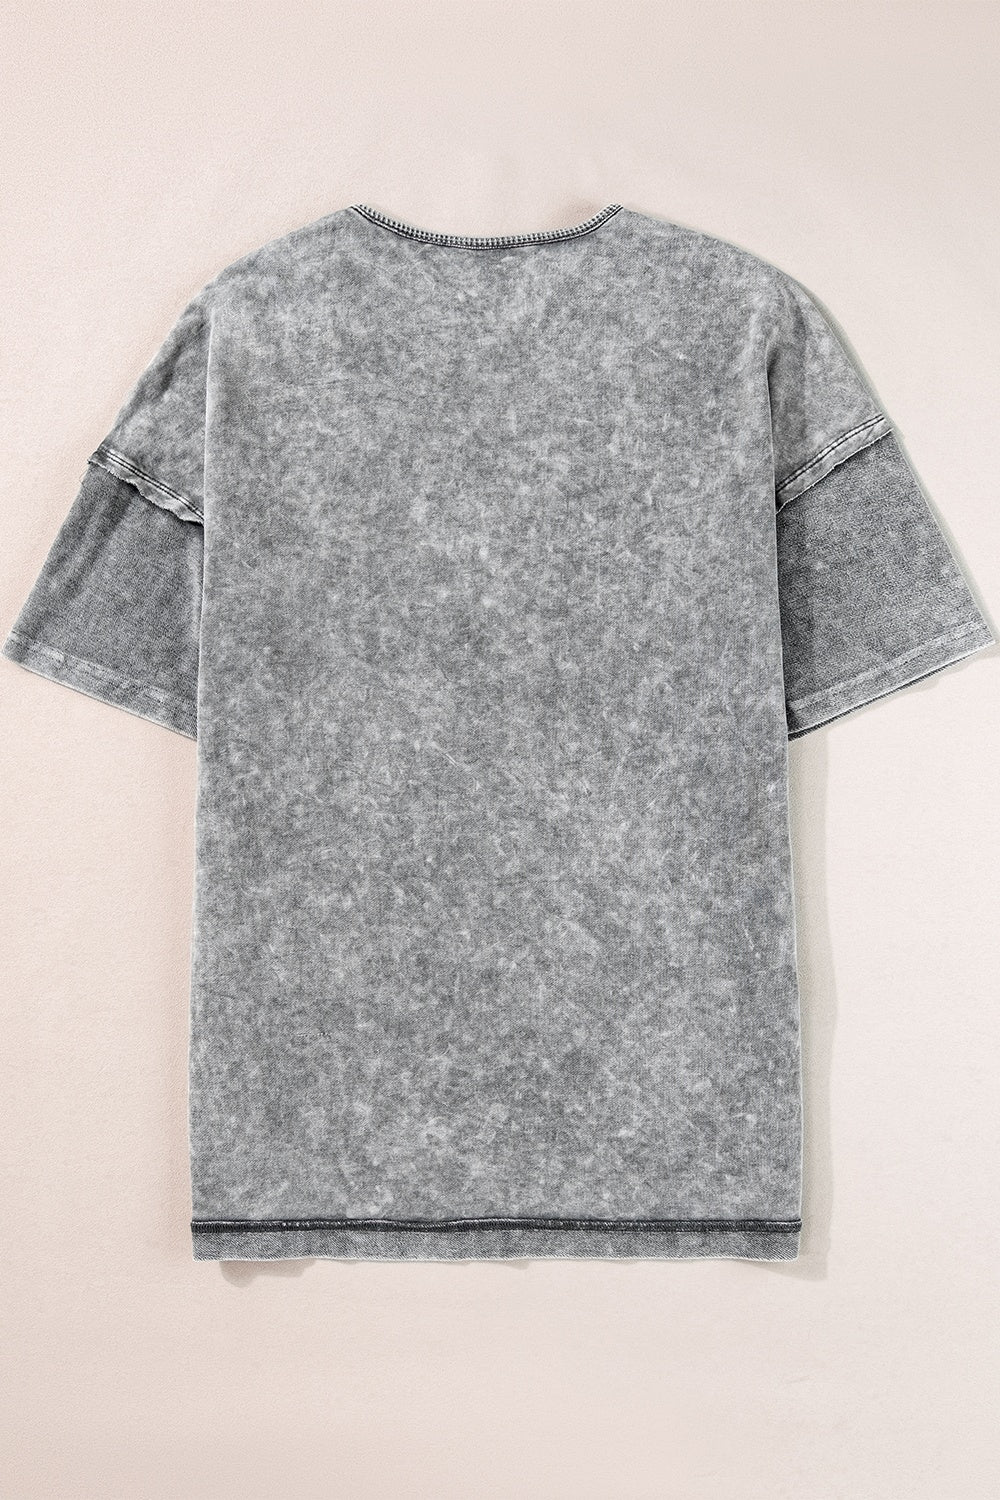 Round Neck Half Sleeve T-Shirt Trendsi